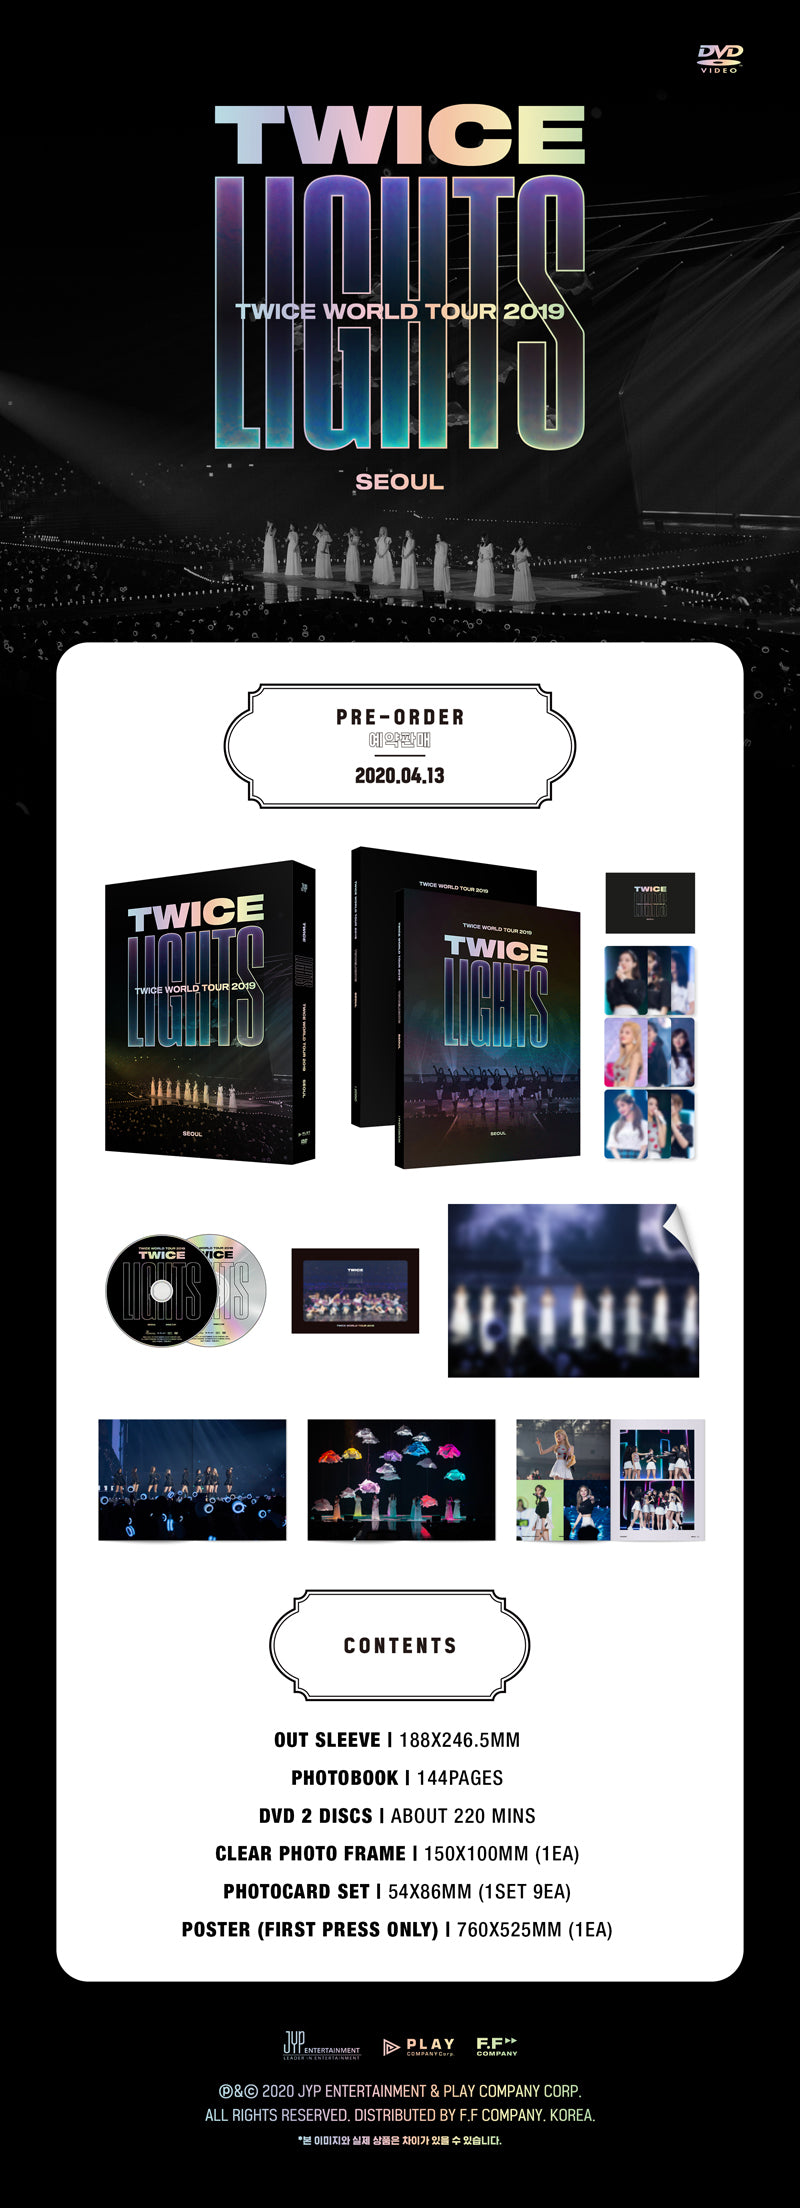 مرتين - 2019 World Tour "Twicelights" في سيول (DVD)